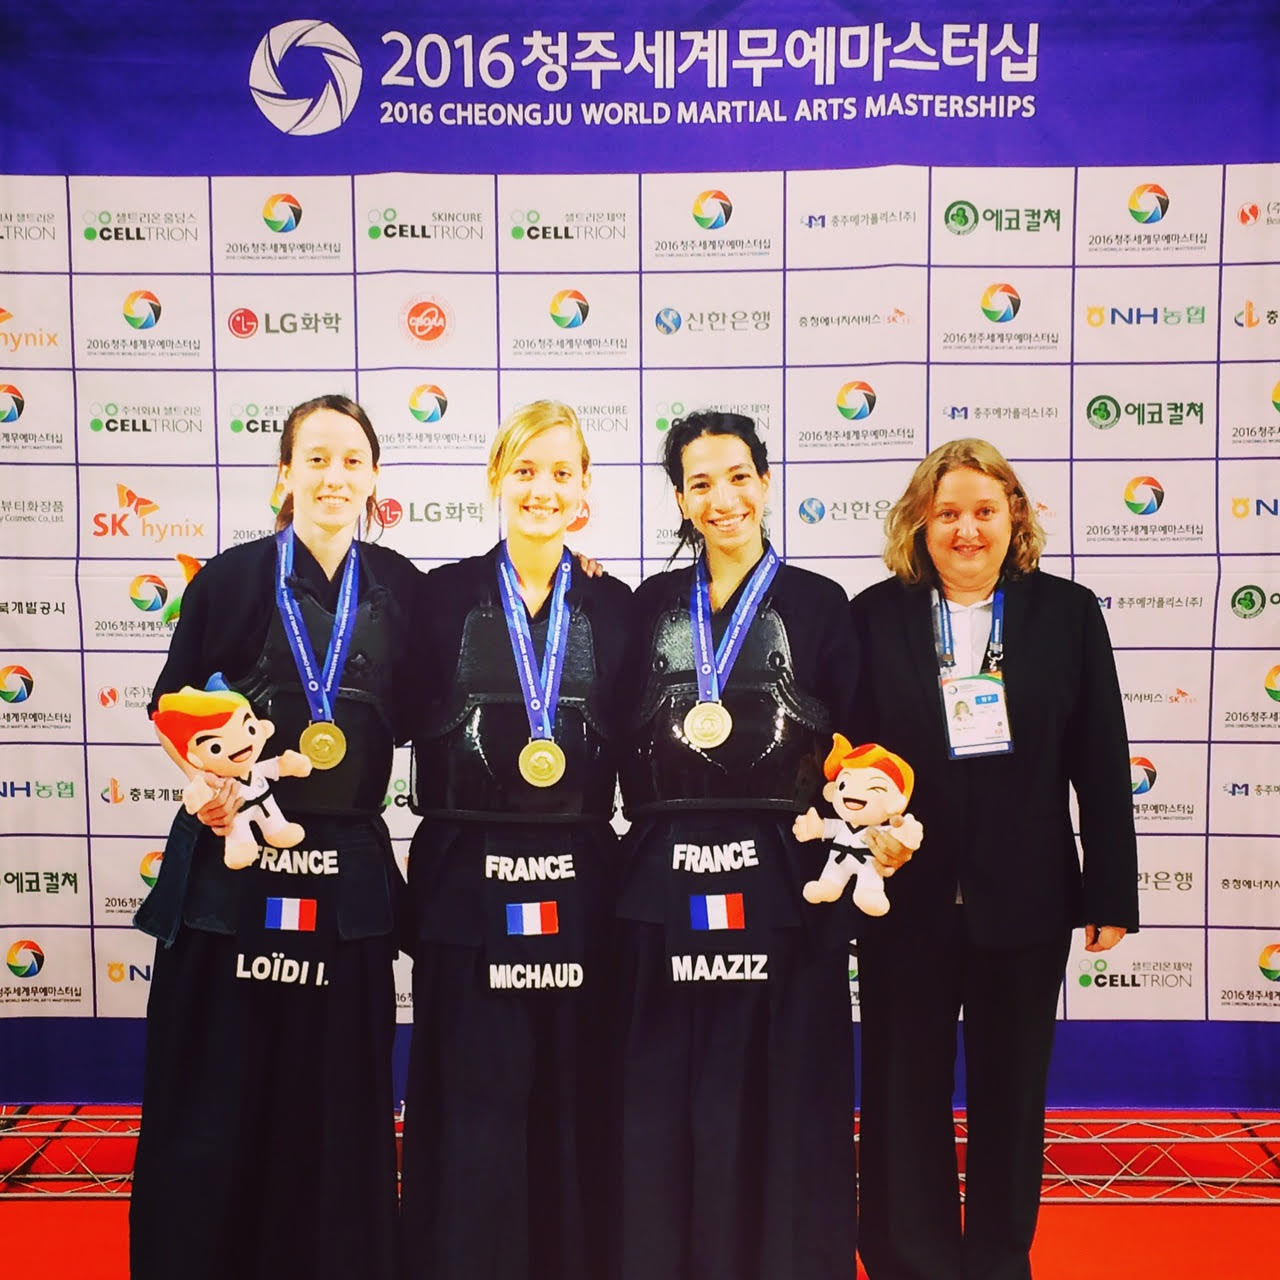 kendokas de l'équipe de France médaillée à Cheongju